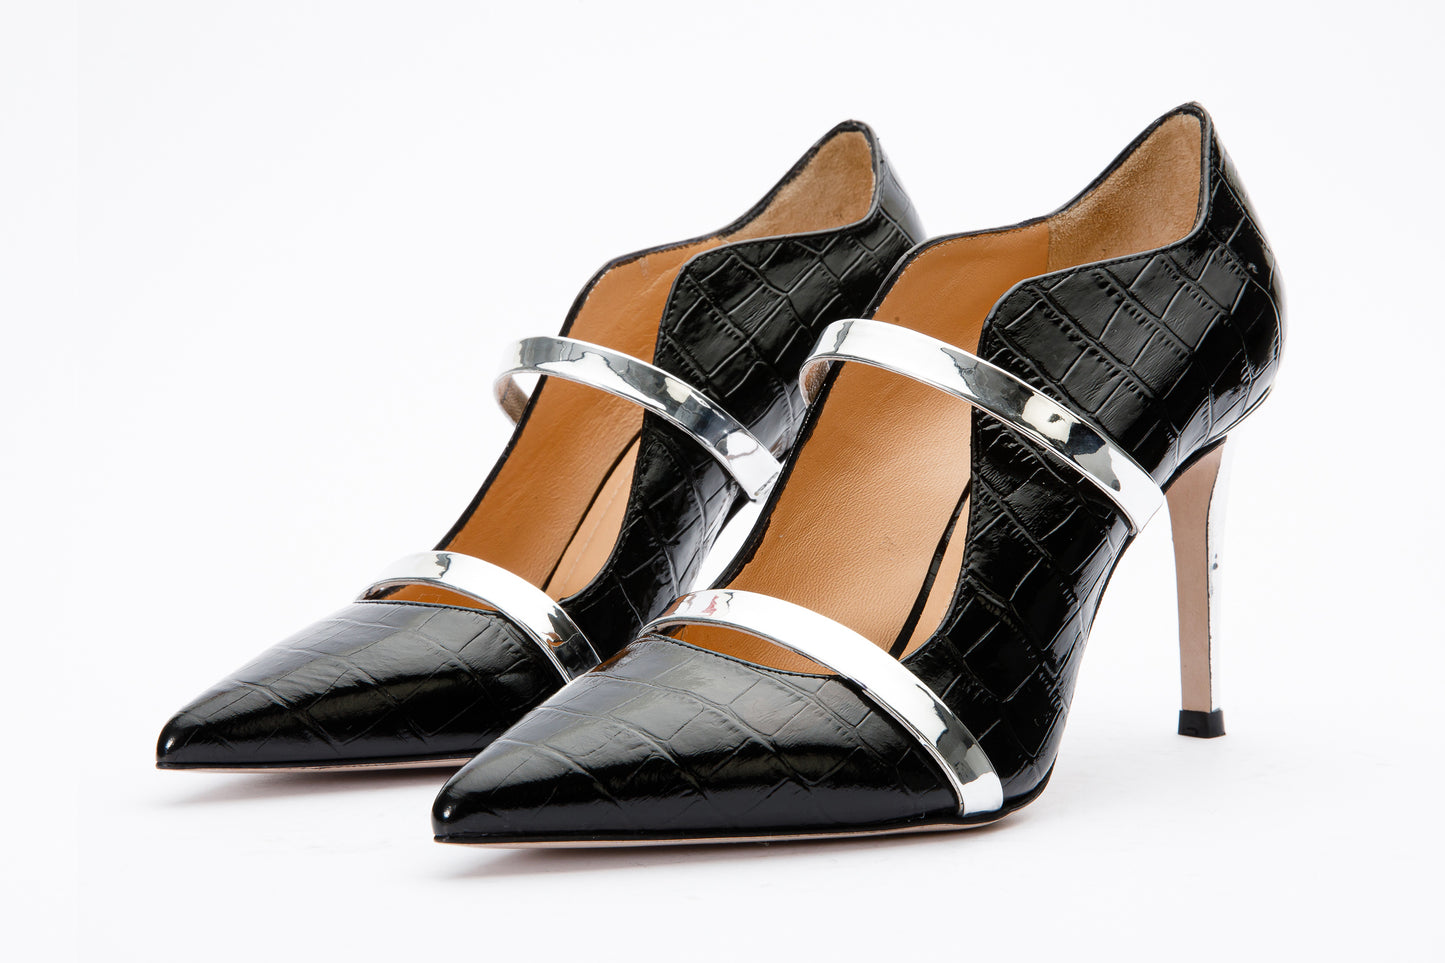 The Annapolis Black Patent Leather Pump Women Shoe